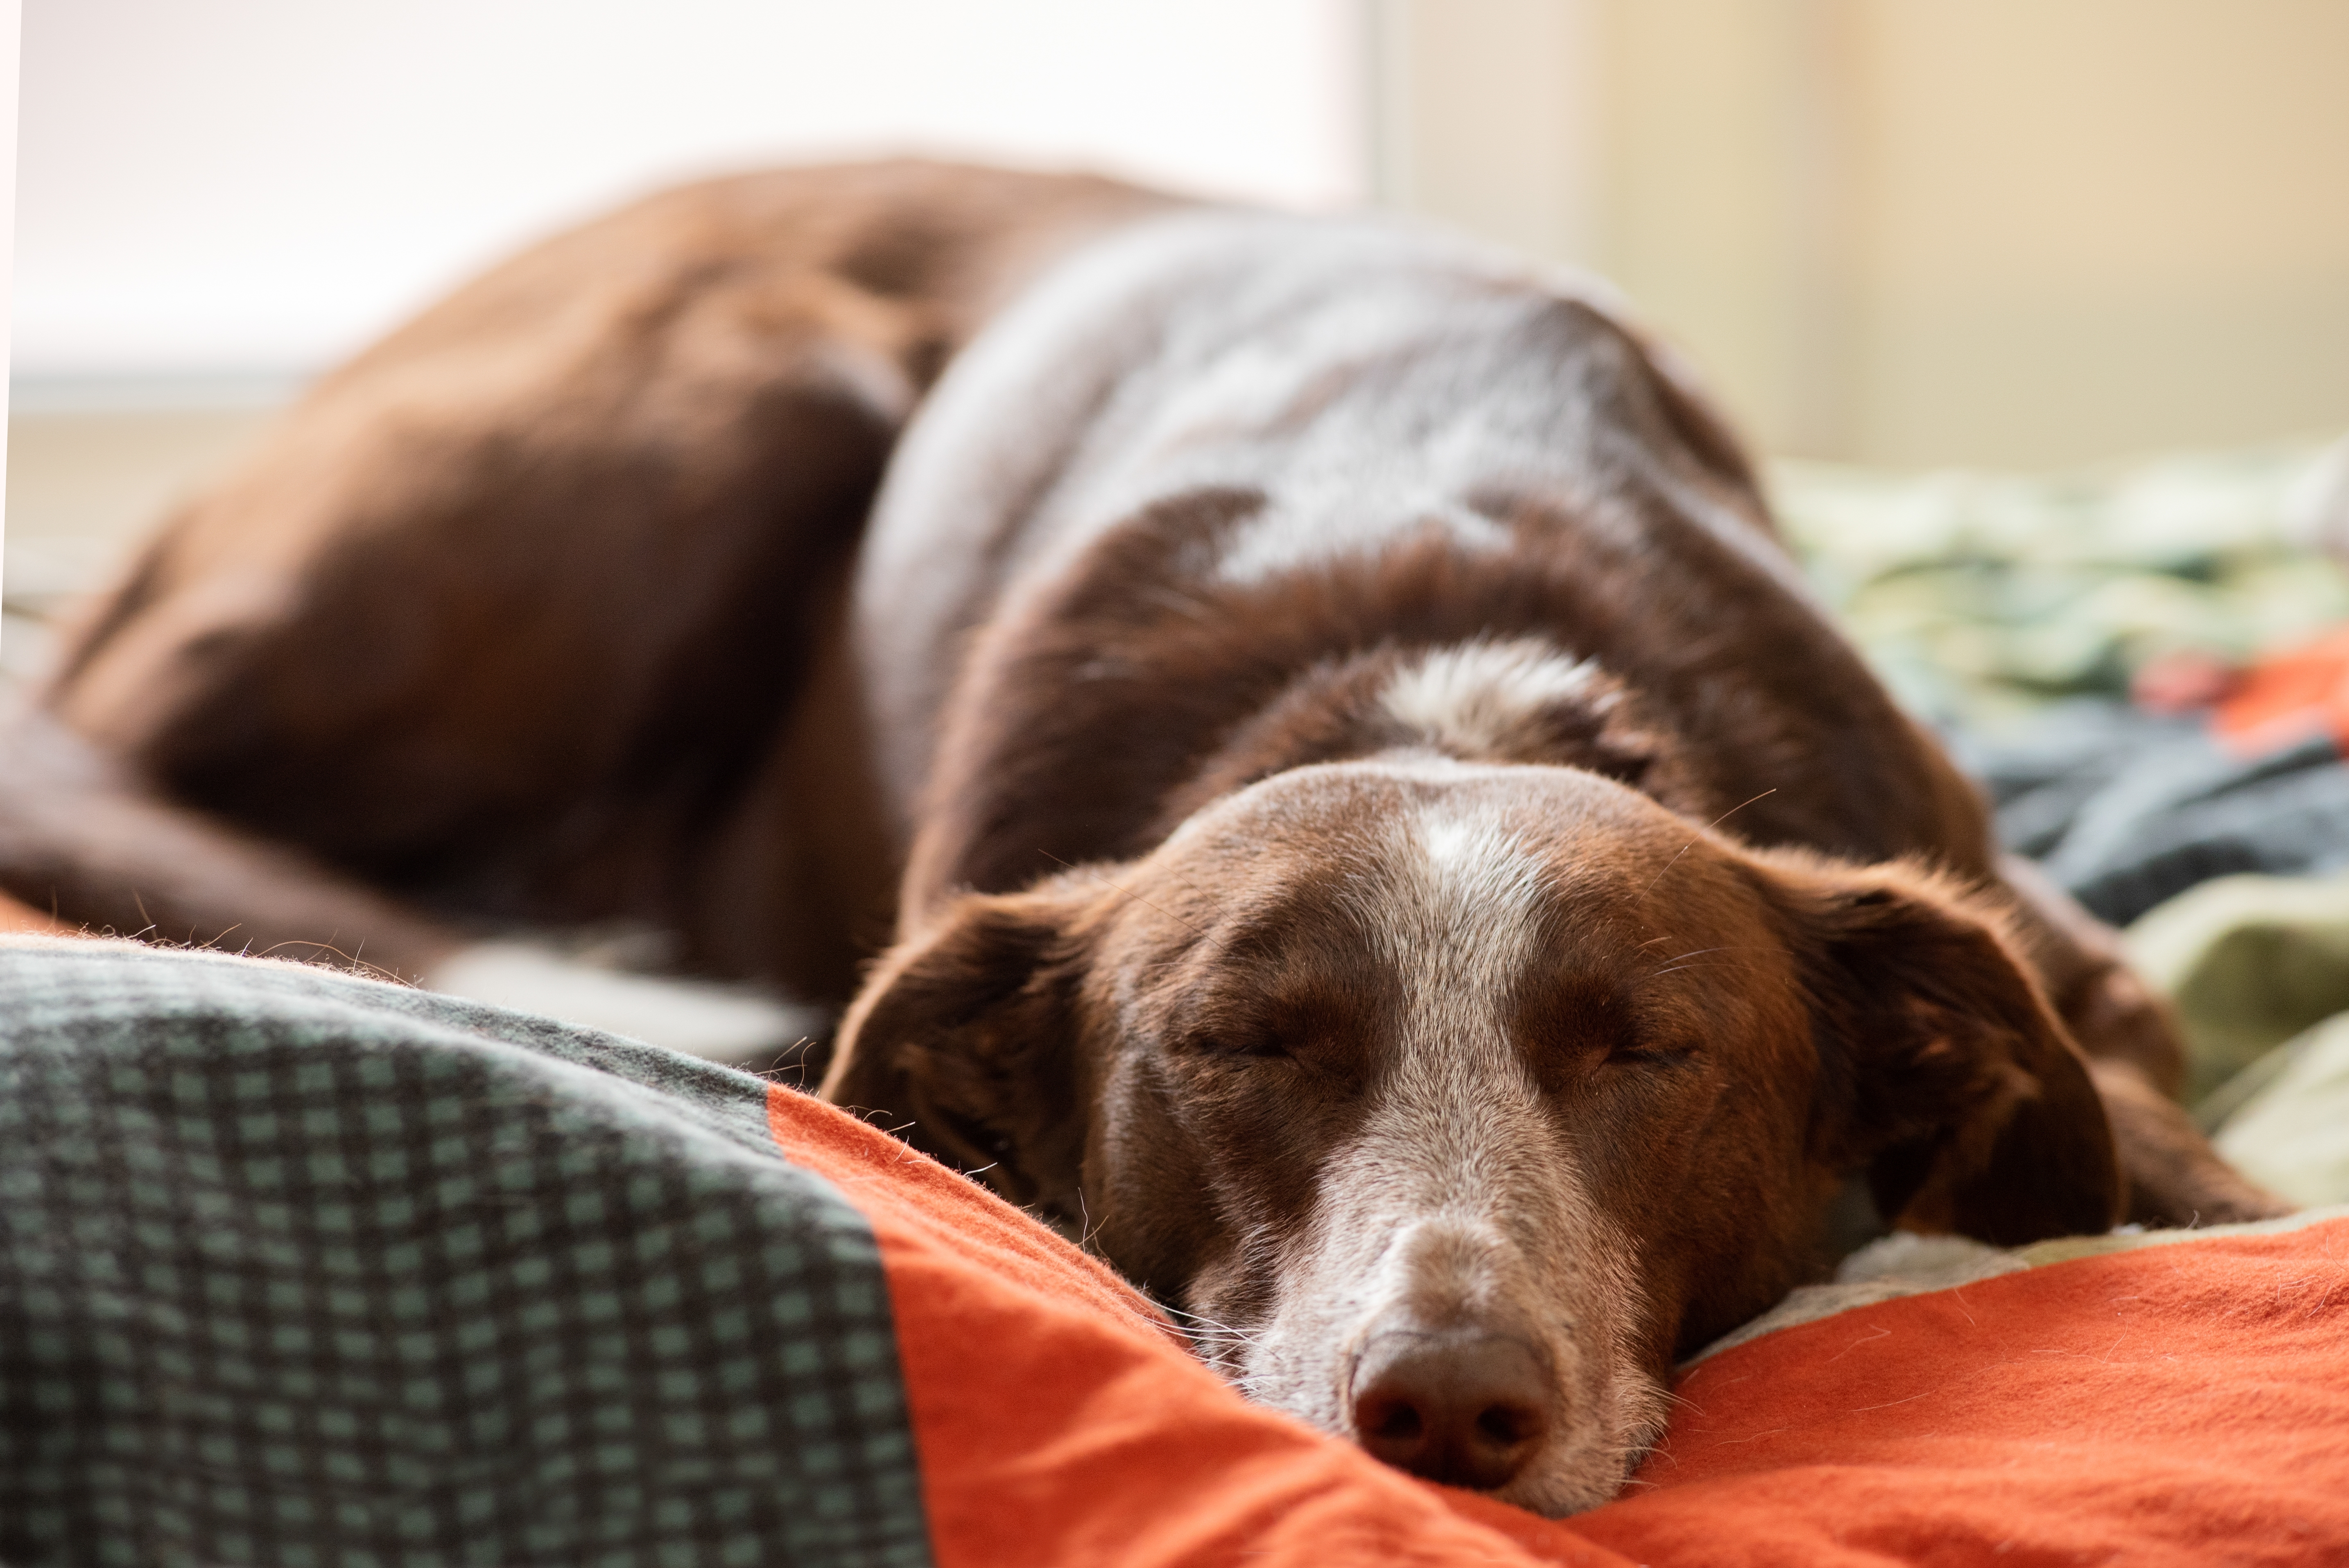 Un perro durmiendo en una cama | Fuente: Shutterstock